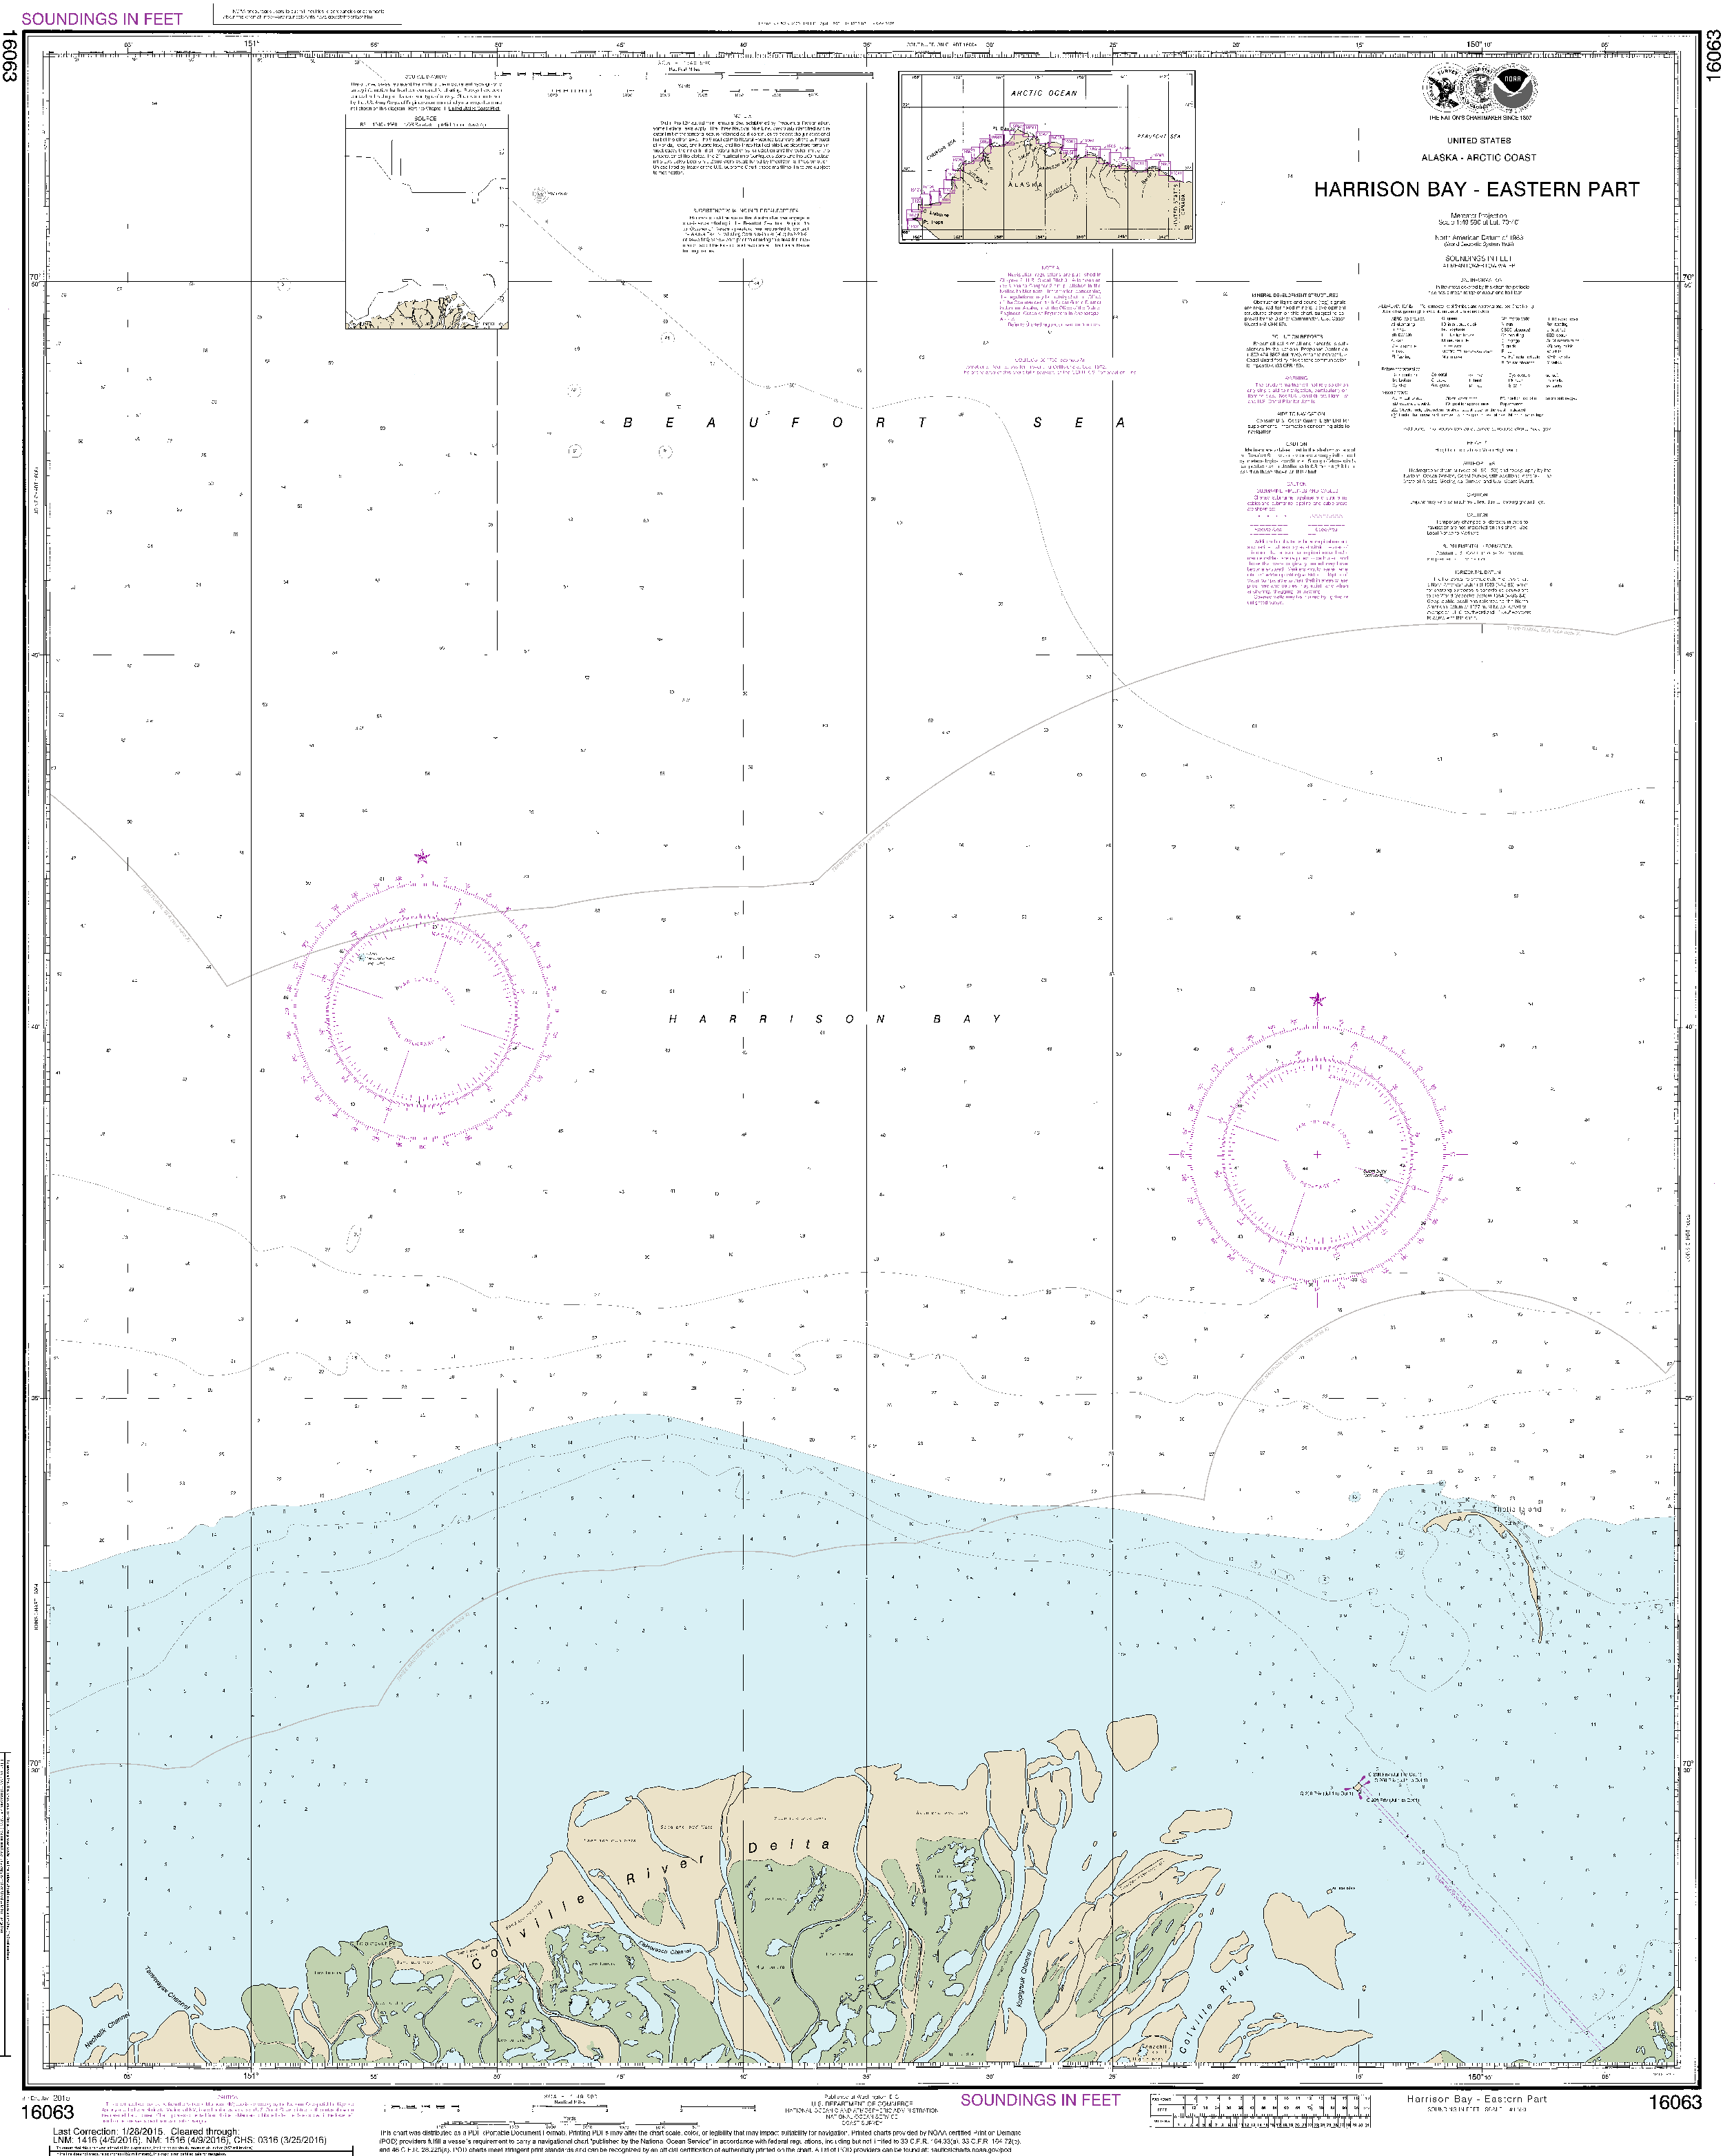 NOAA Nautical Chart 16063: Harrison Bay-eastern part